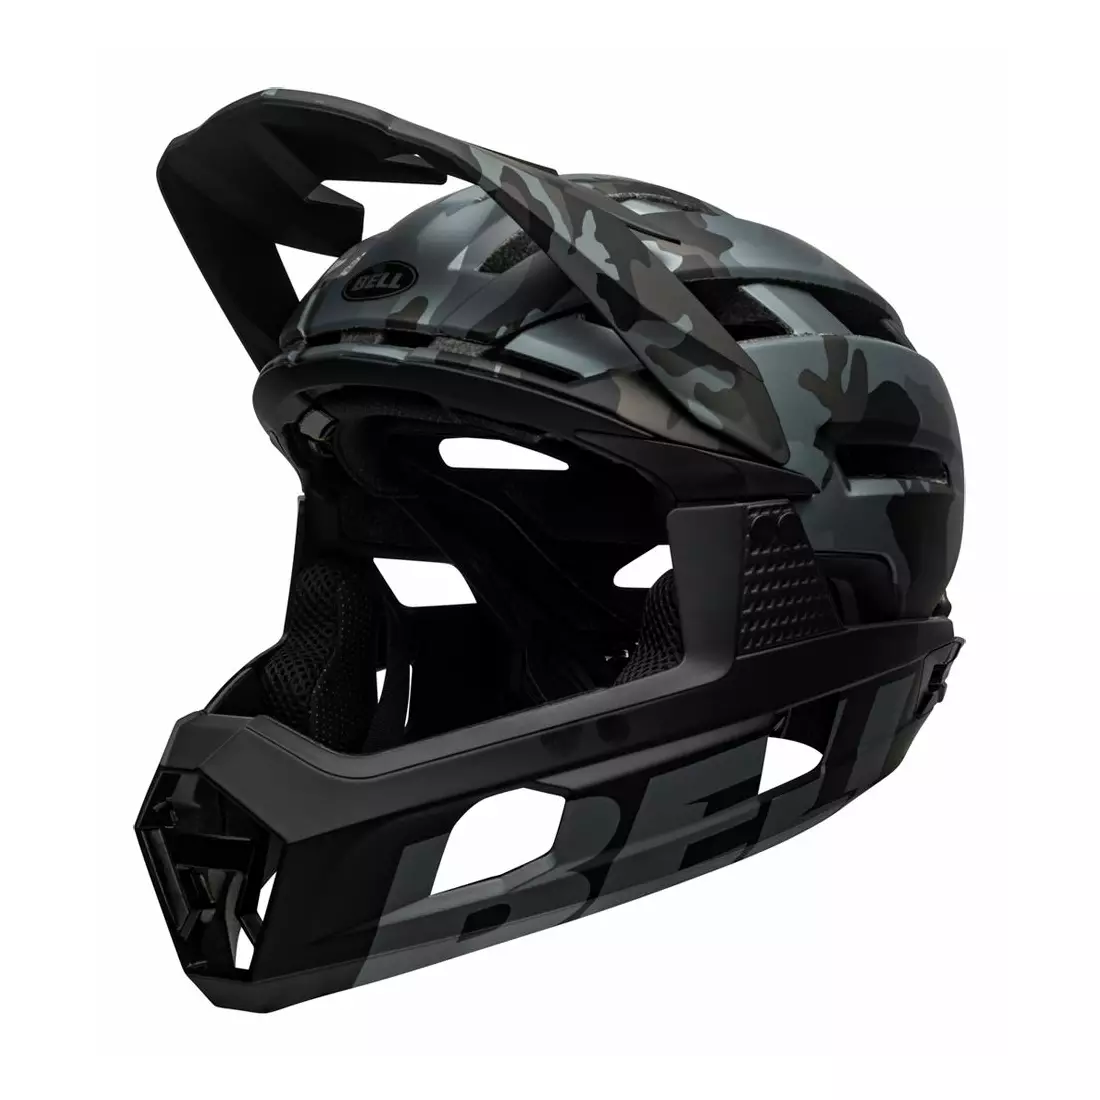 BELL SUPER AIR R MIPS SPHERICAL cască integrală pentru bicicletă, matte gloss black camo